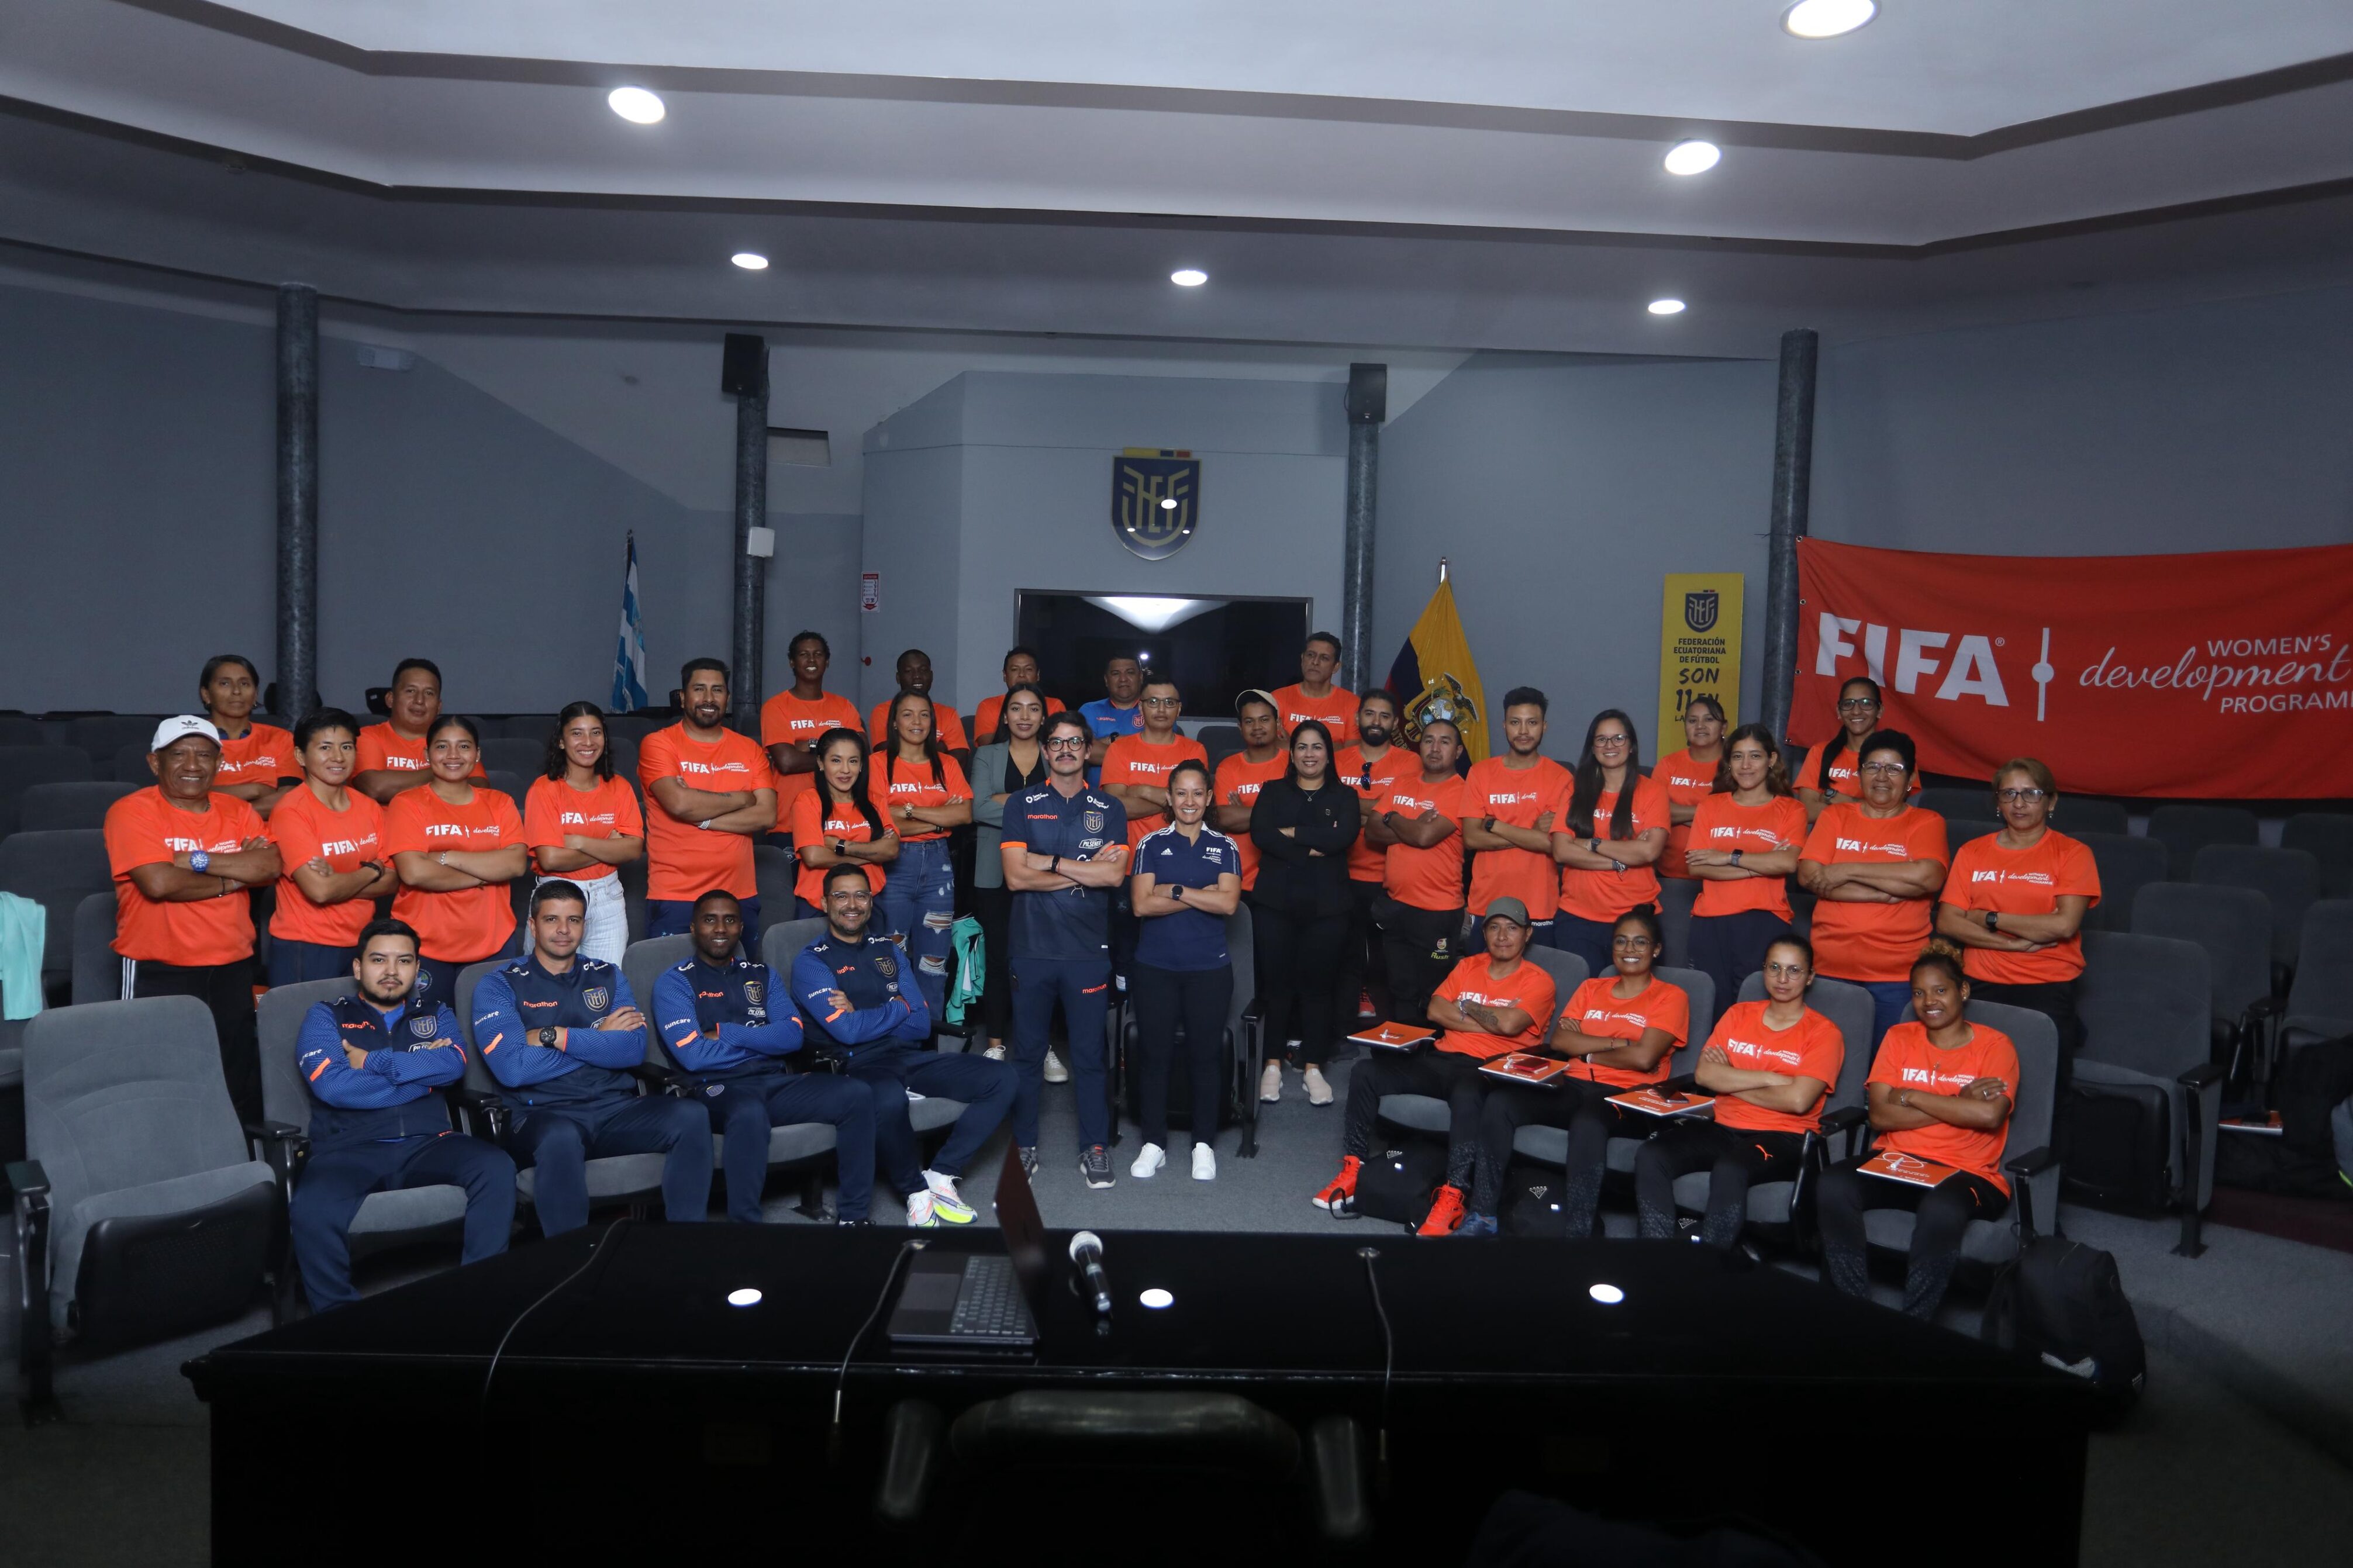 La Federación Ecuatoriana de Fútbol (FEF), en el marco del Programa Desarrollo de Ligas, con el apoyo de la Federación Internacional de Asociaciones de Fútbol (FIFA), brindó hoy una jornada de capacitación presencial para entrenadores de fútbol femenino.